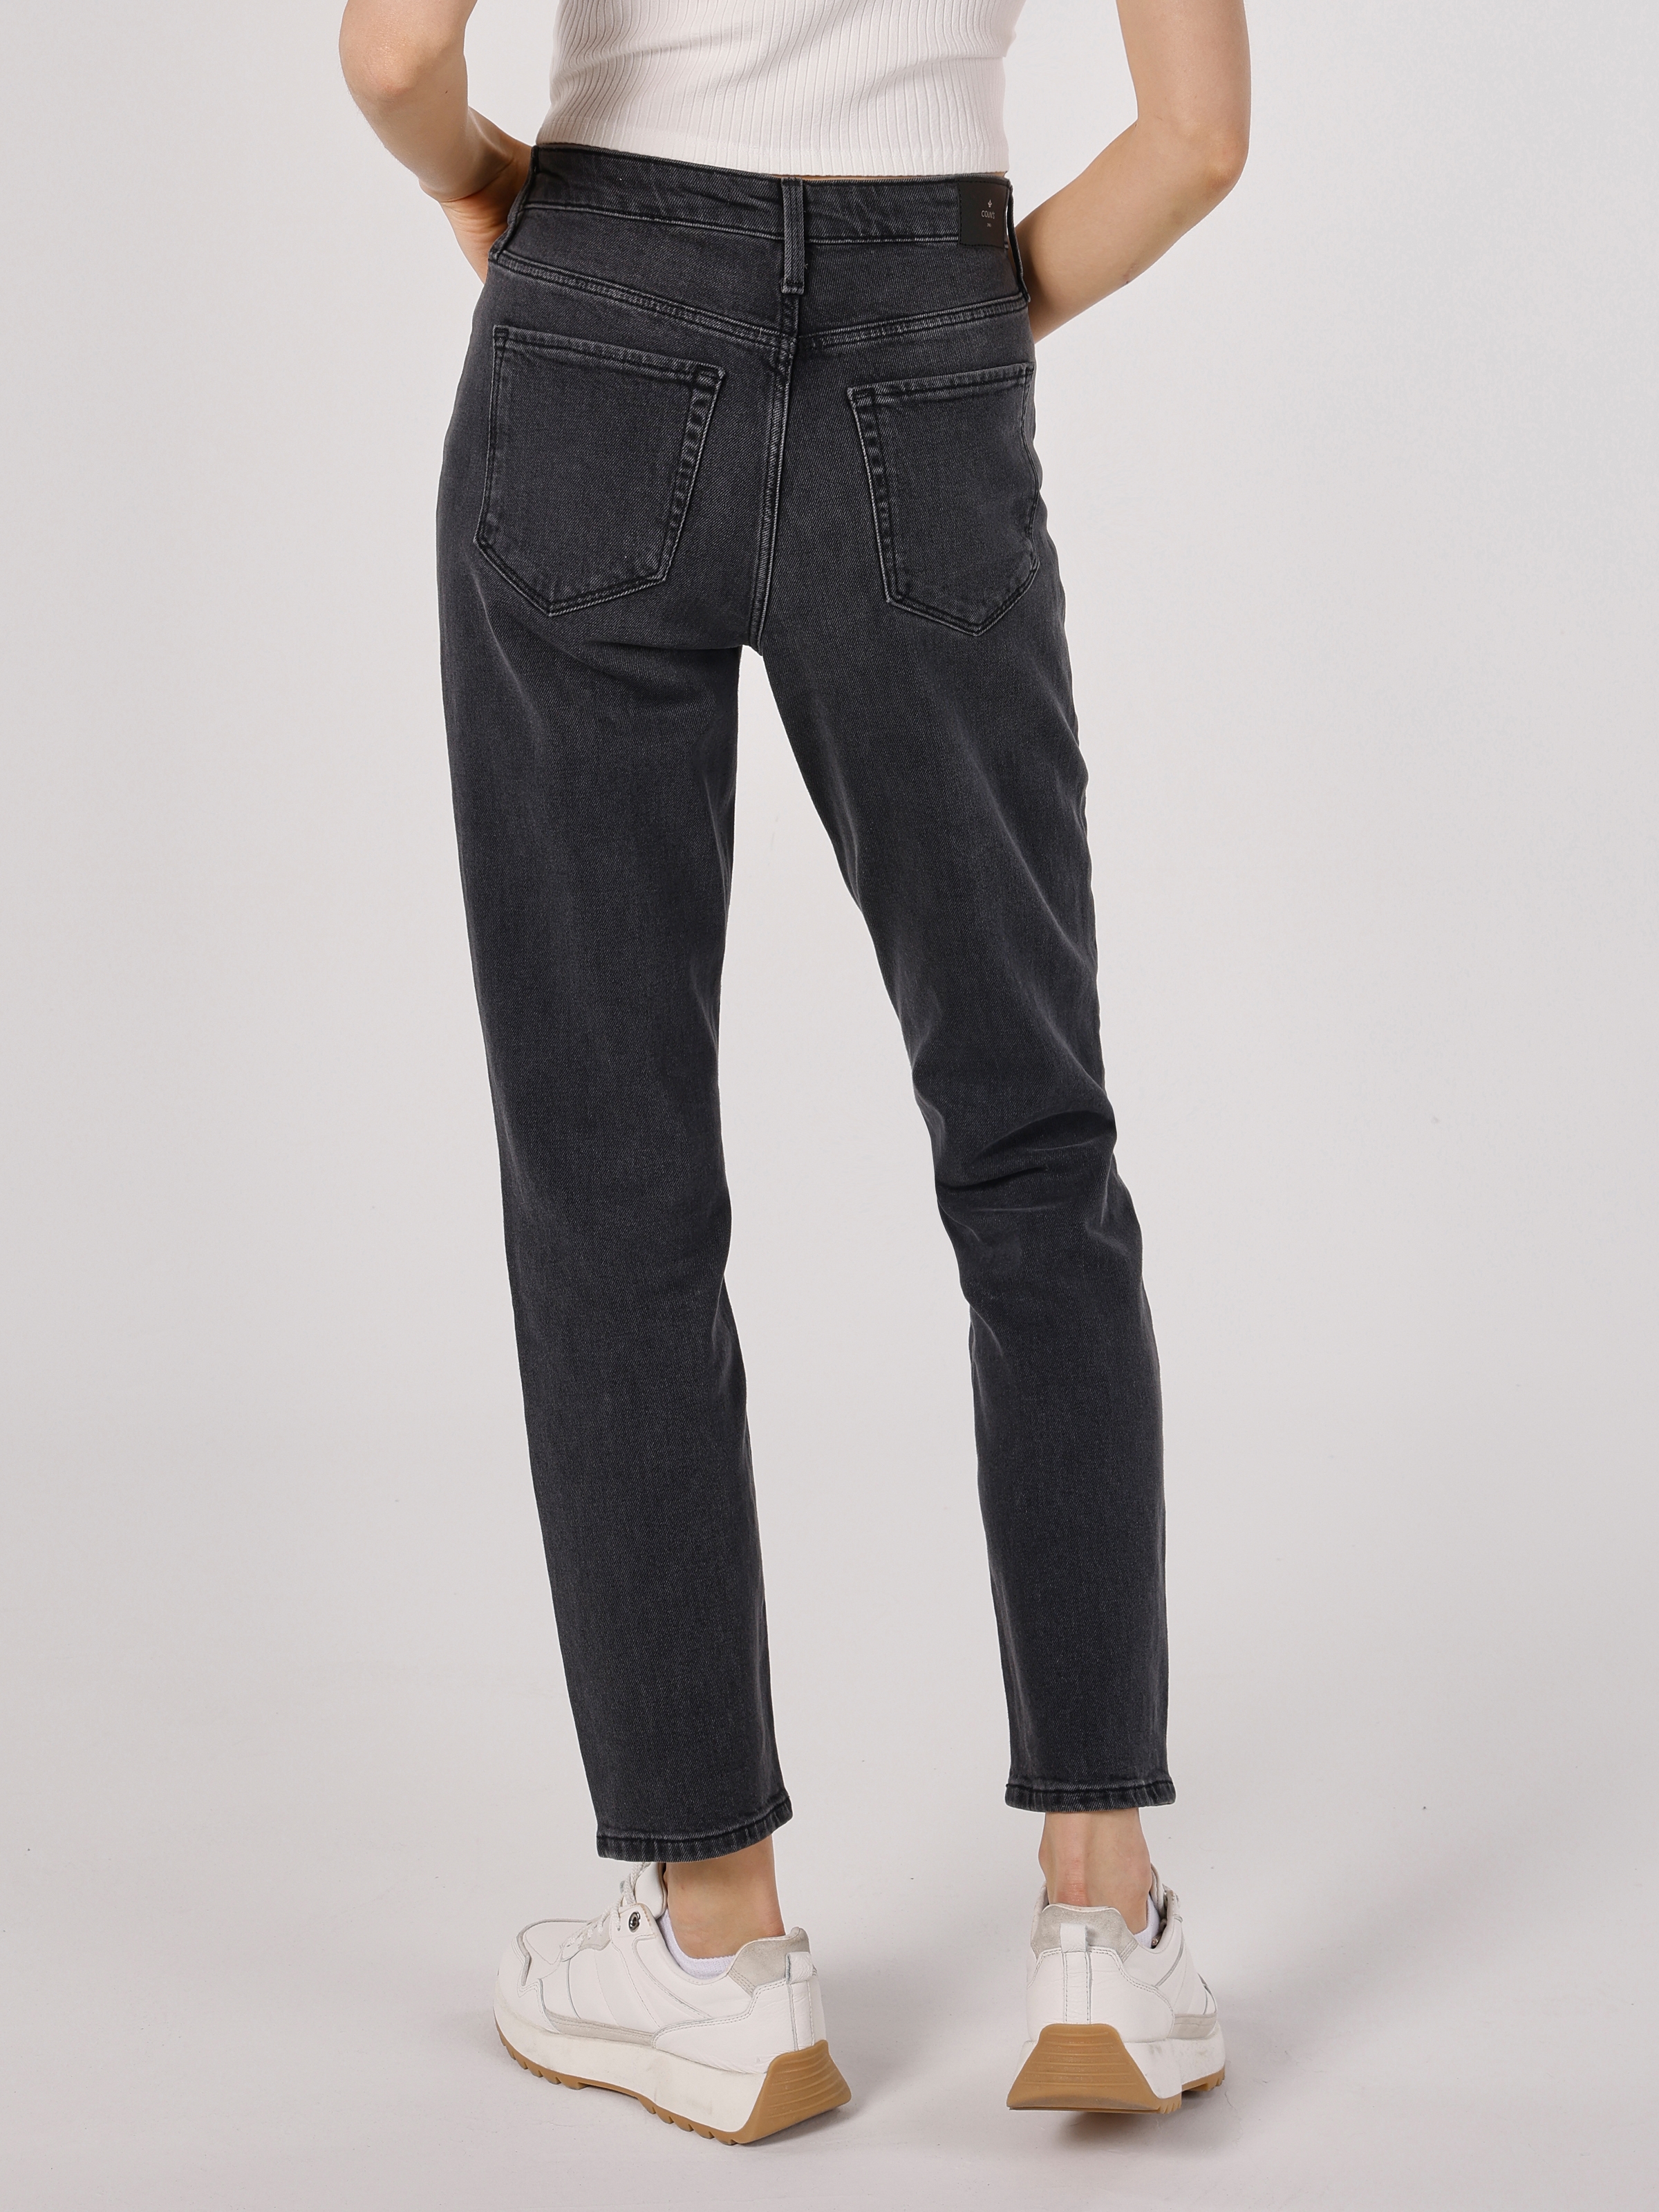 Afficher les détails de 891 Maya Slim Fit Taille Normale Jambe Étroite Gris Pantalon En Jean Pour Femme